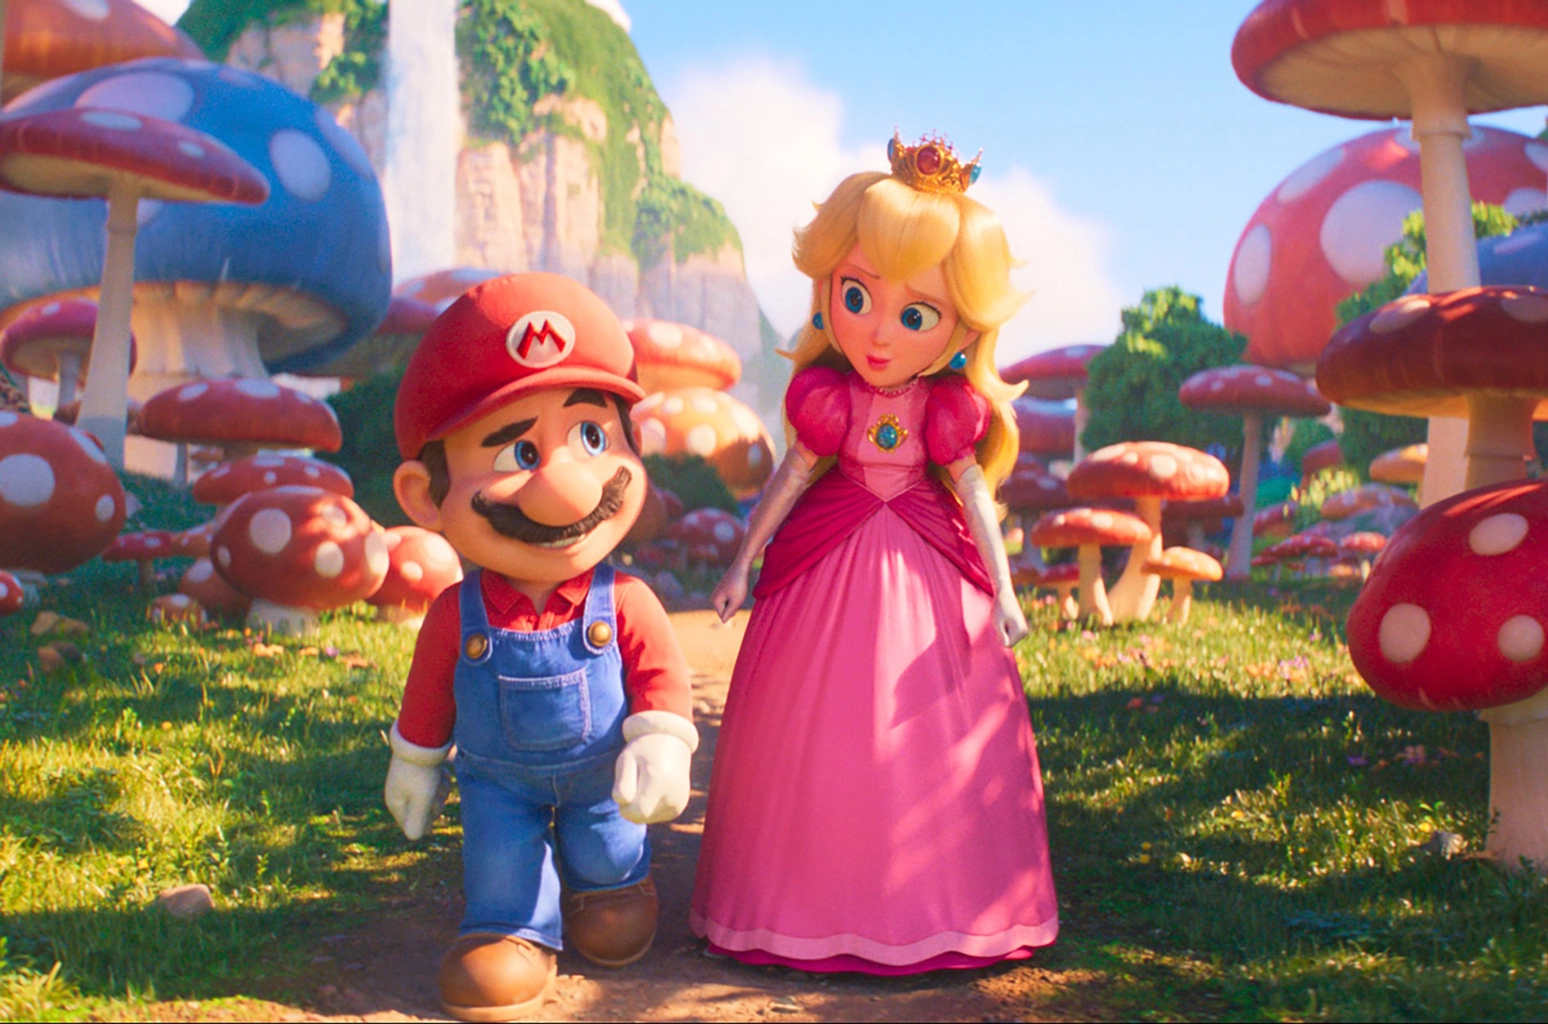 Фільм Super Mario Bros. став другим найкасовішим анімаційним фільмом в історії